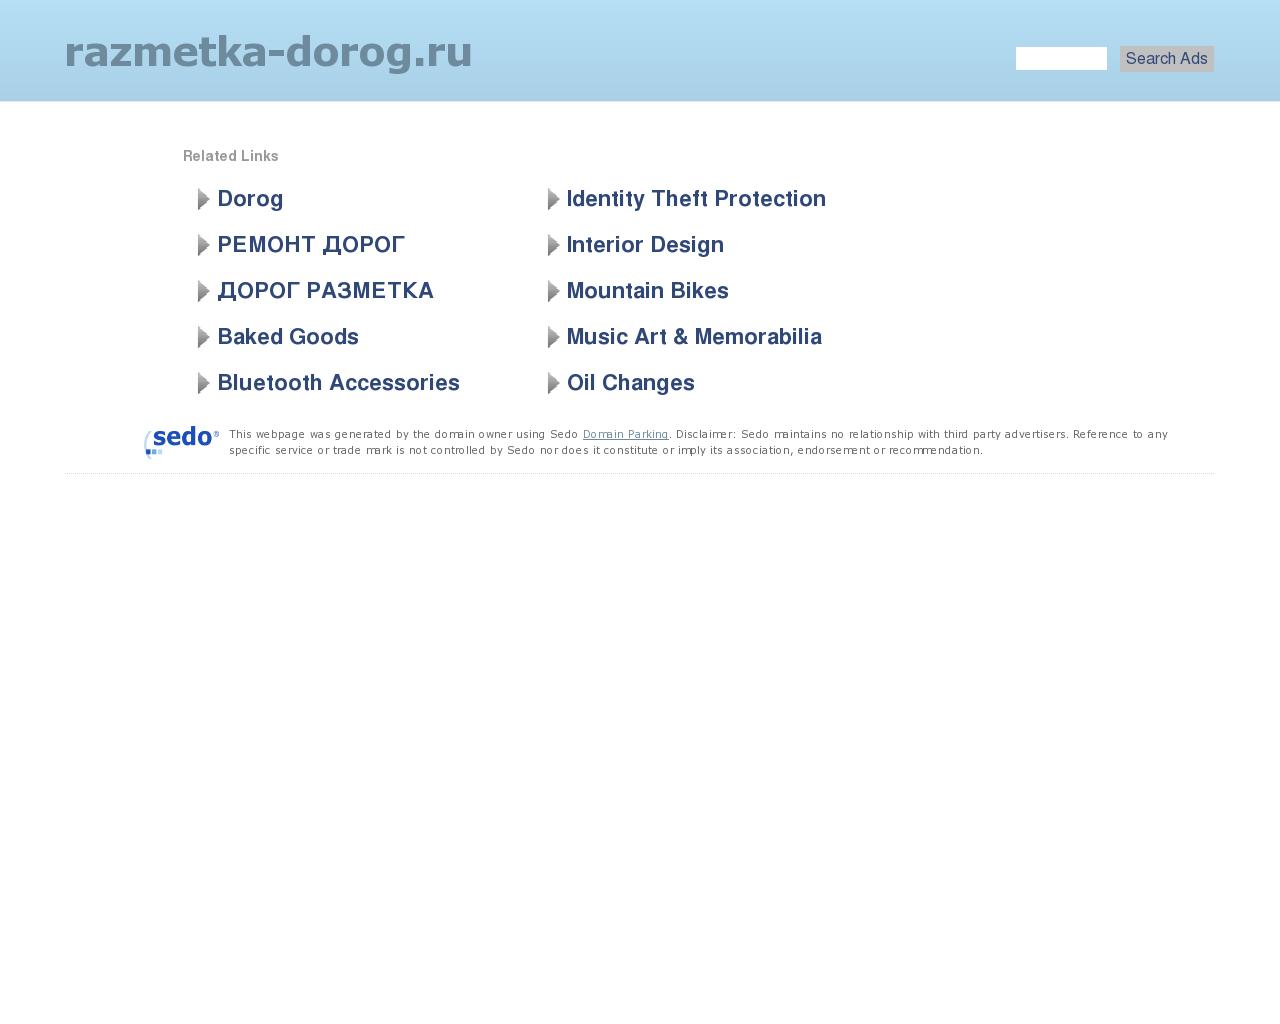 Изображение сайта razmetka-dorog.ru в разрешении 1280x1024